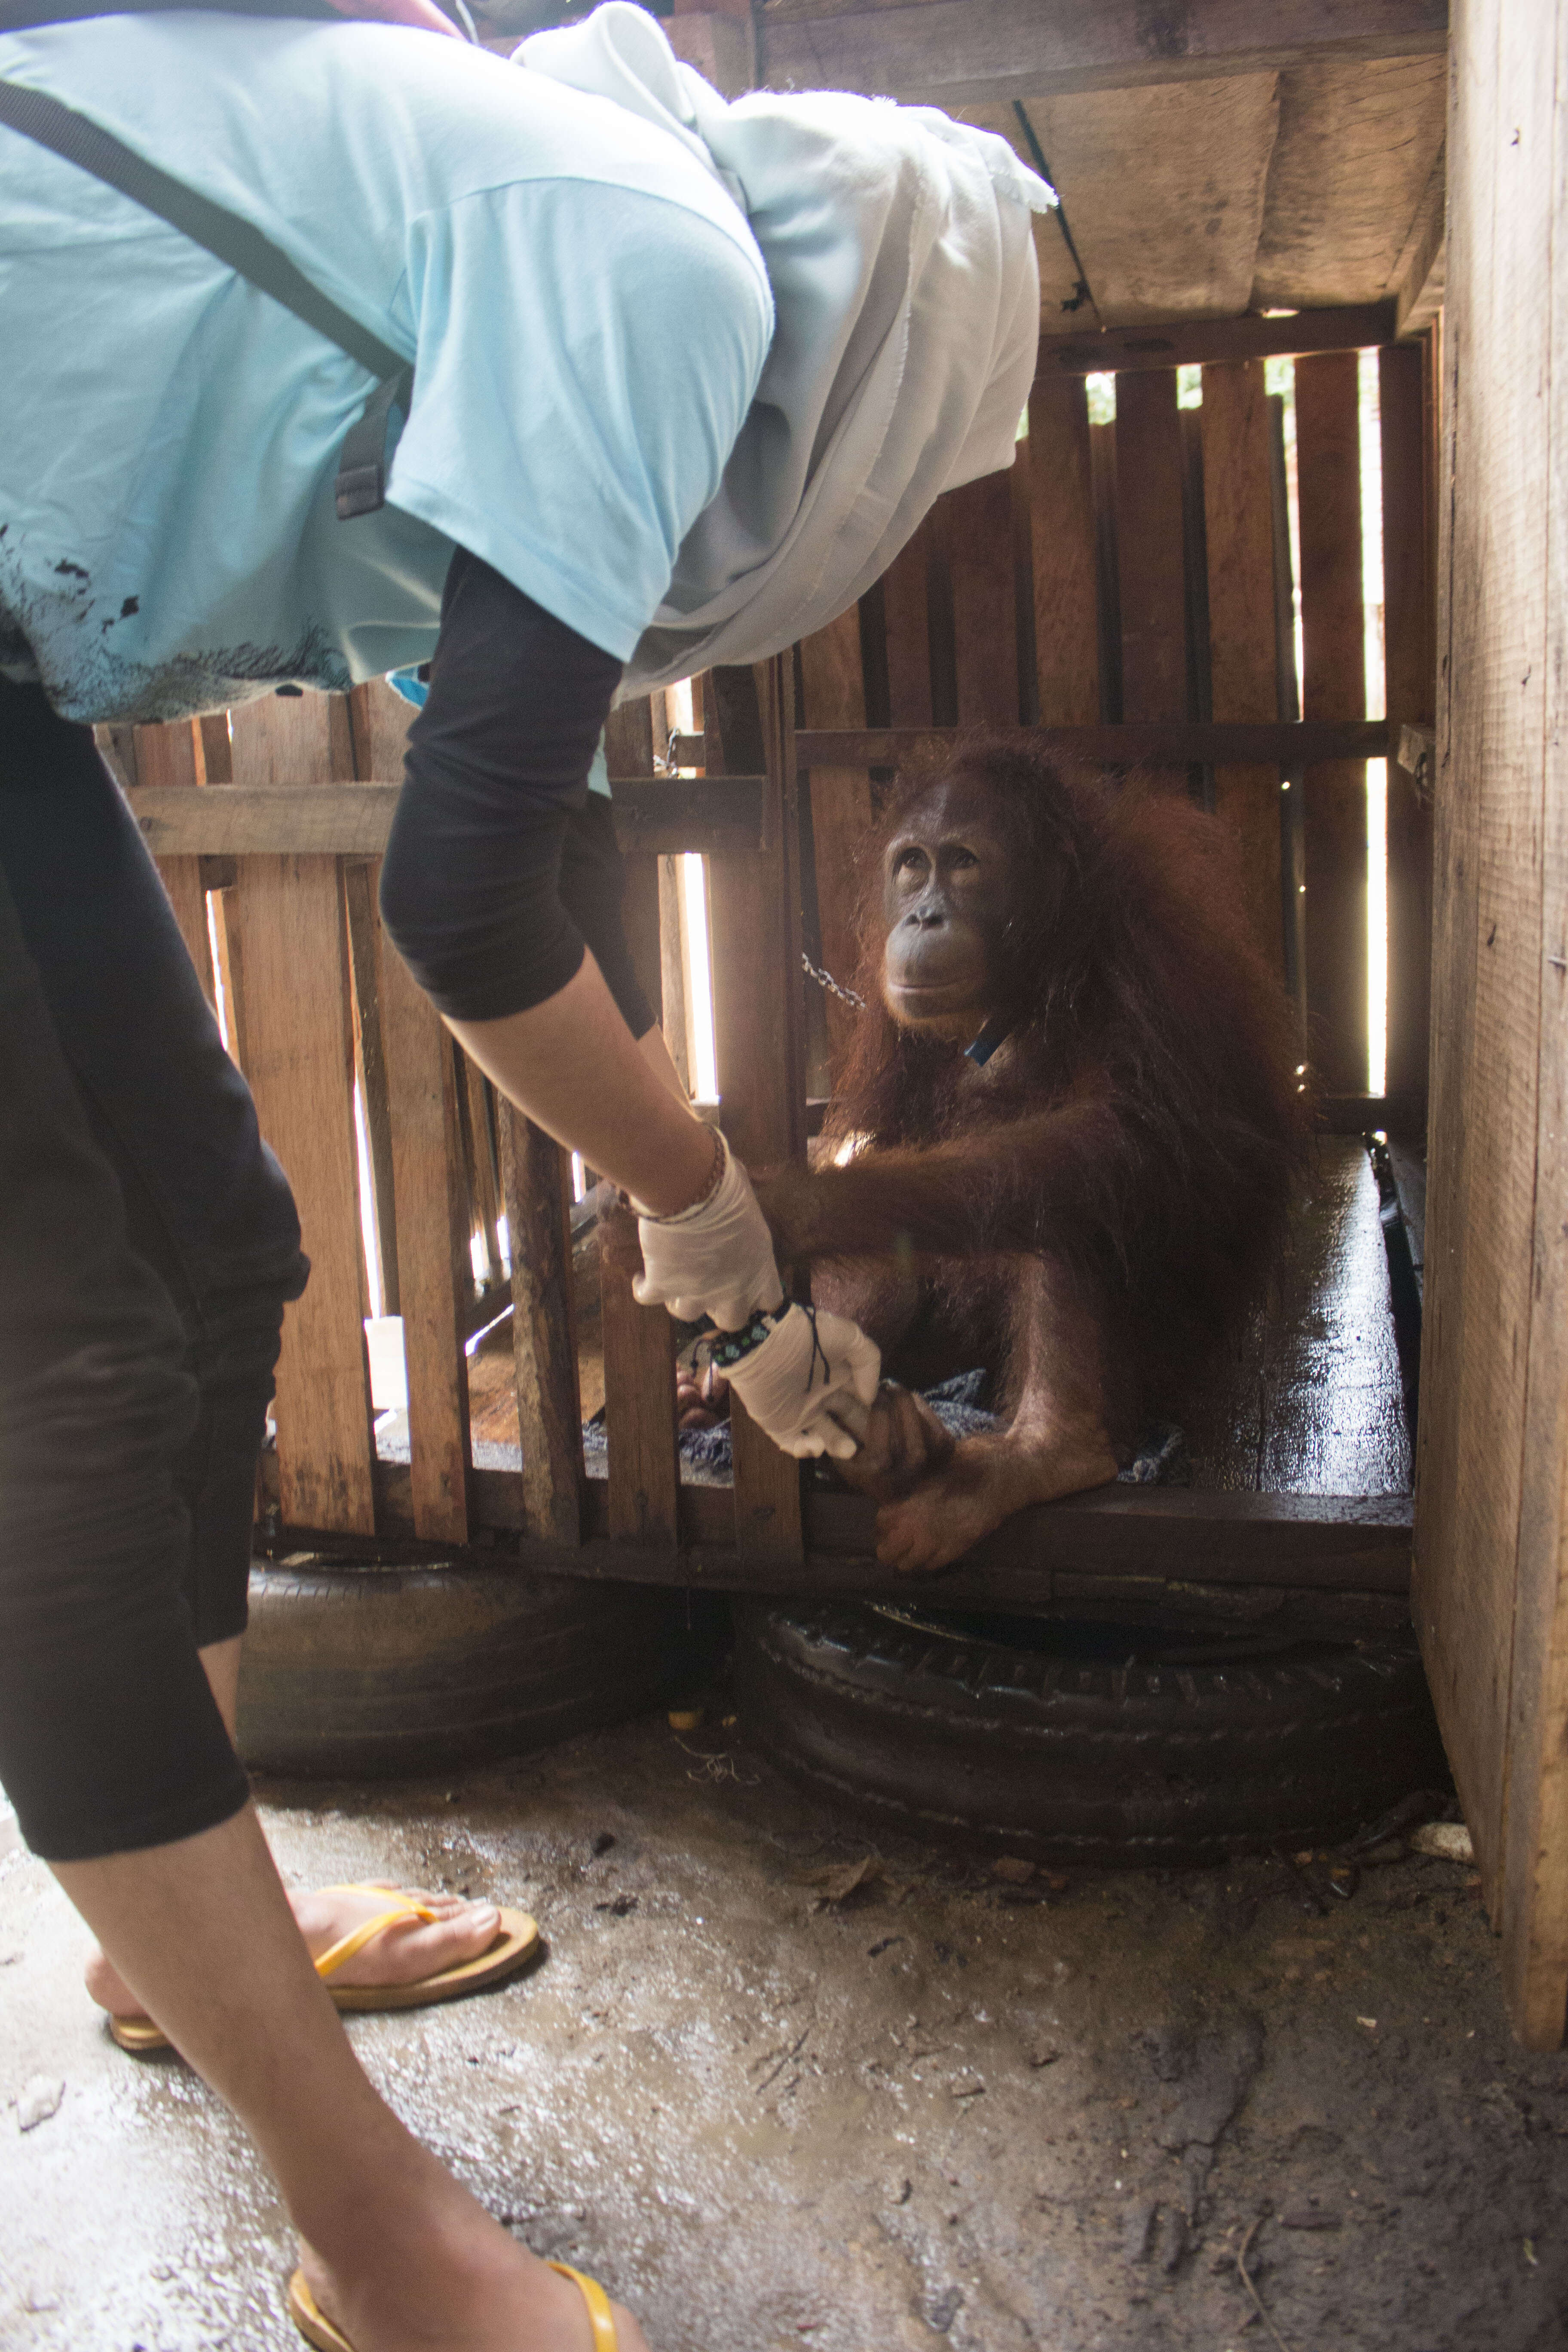 Bornean orangutan locked inside crate in Indonesia